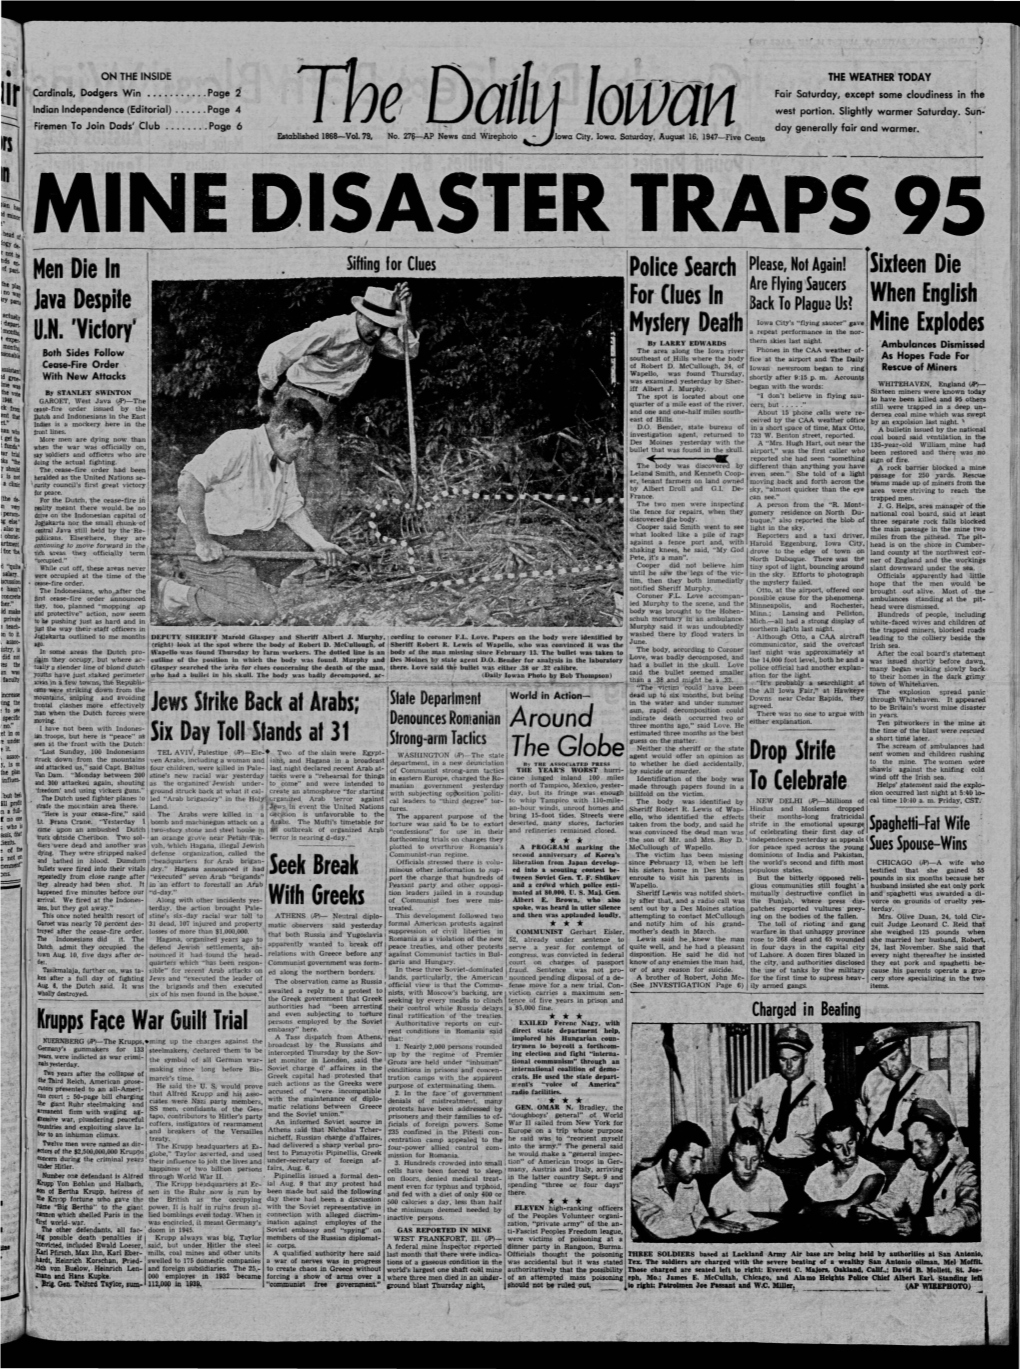 Daily Iowan (Iowa City, Iowa), 1947-08-16